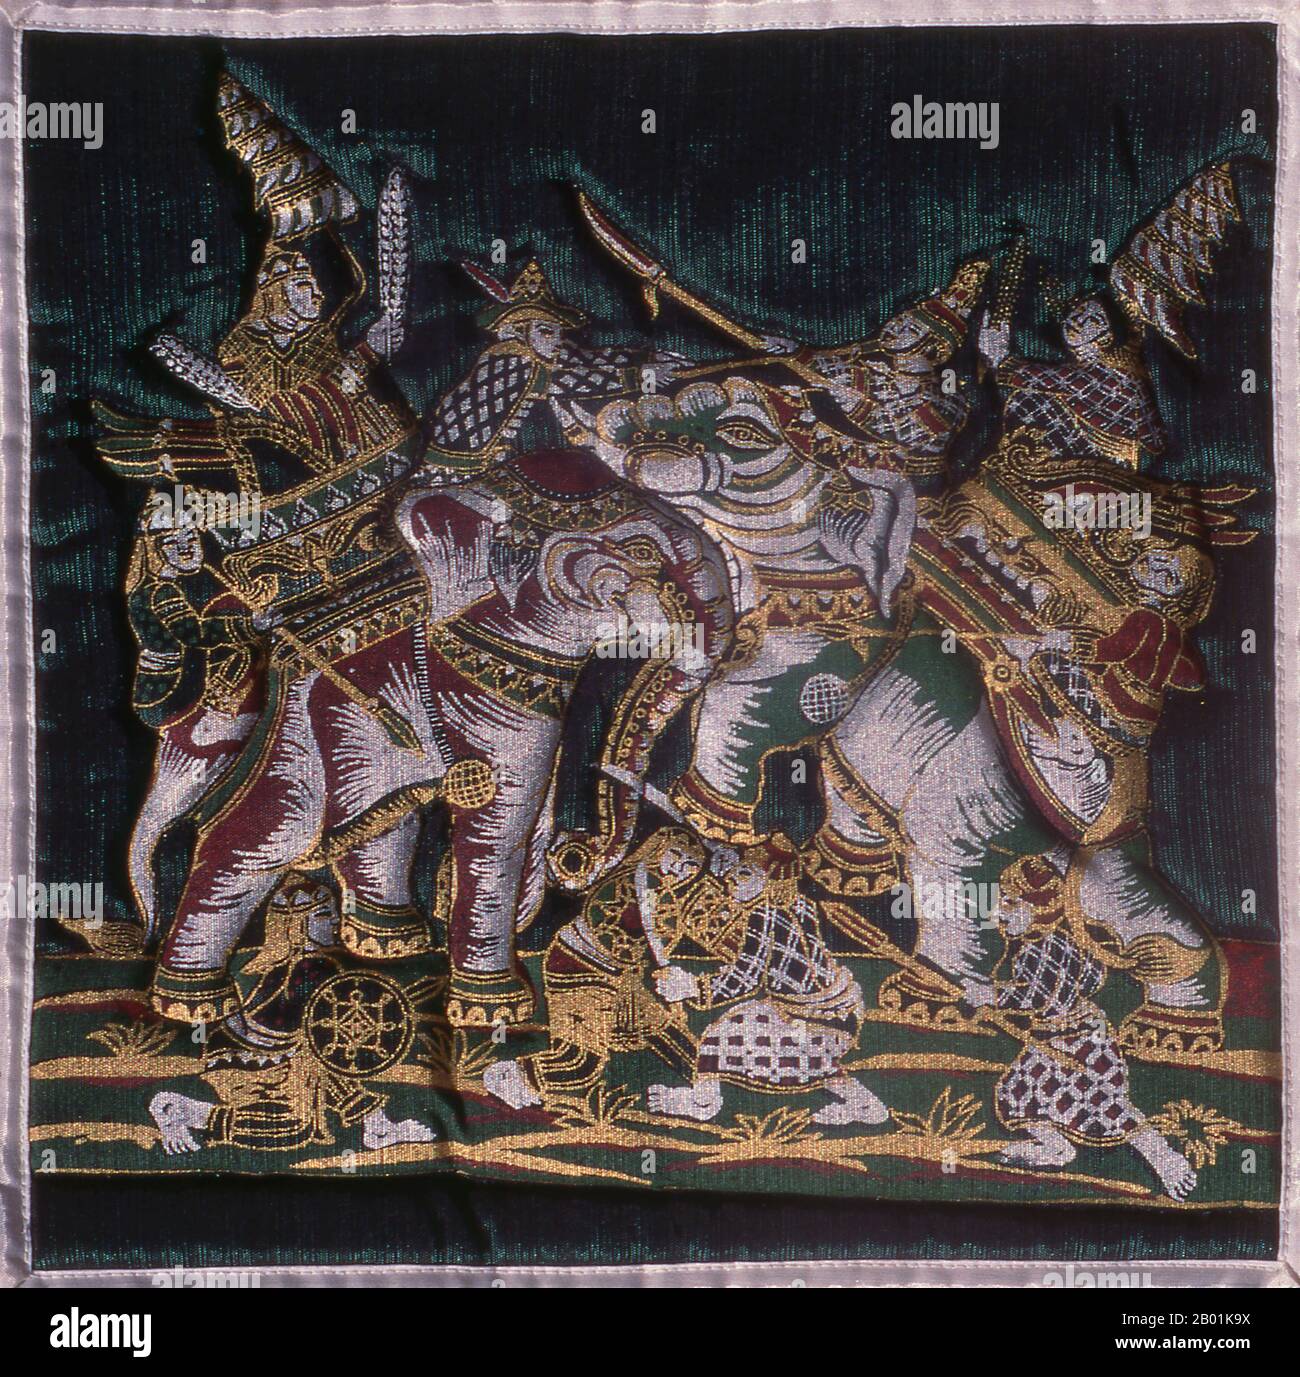 Thailandia: Un disegno di cuscino di seta che mostra il re Naresuan del Siam (1555/1556 - 25 aprile 1605) che sconfigge e uccide il principe ereditario birmano Minchit Sra in combattimento con elefanti nella battaglia di Nong sarai, 1593. Nel 1592, Nanda Bayin ordinò a suo figlio Minchit Sra di attaccare Ayutthaya. L'esercito siamese, al comando di re Naresuan, incontrò l'esercito birmano a Nong sarai lunedì 18 gennaio 1593. La battaglia personale tra Naresuan e Minchit Sra è ora una scena storica altamente romanticizzata conosciuta come Yuddhahatthi, la battaglia degli elefanti Foto Stock